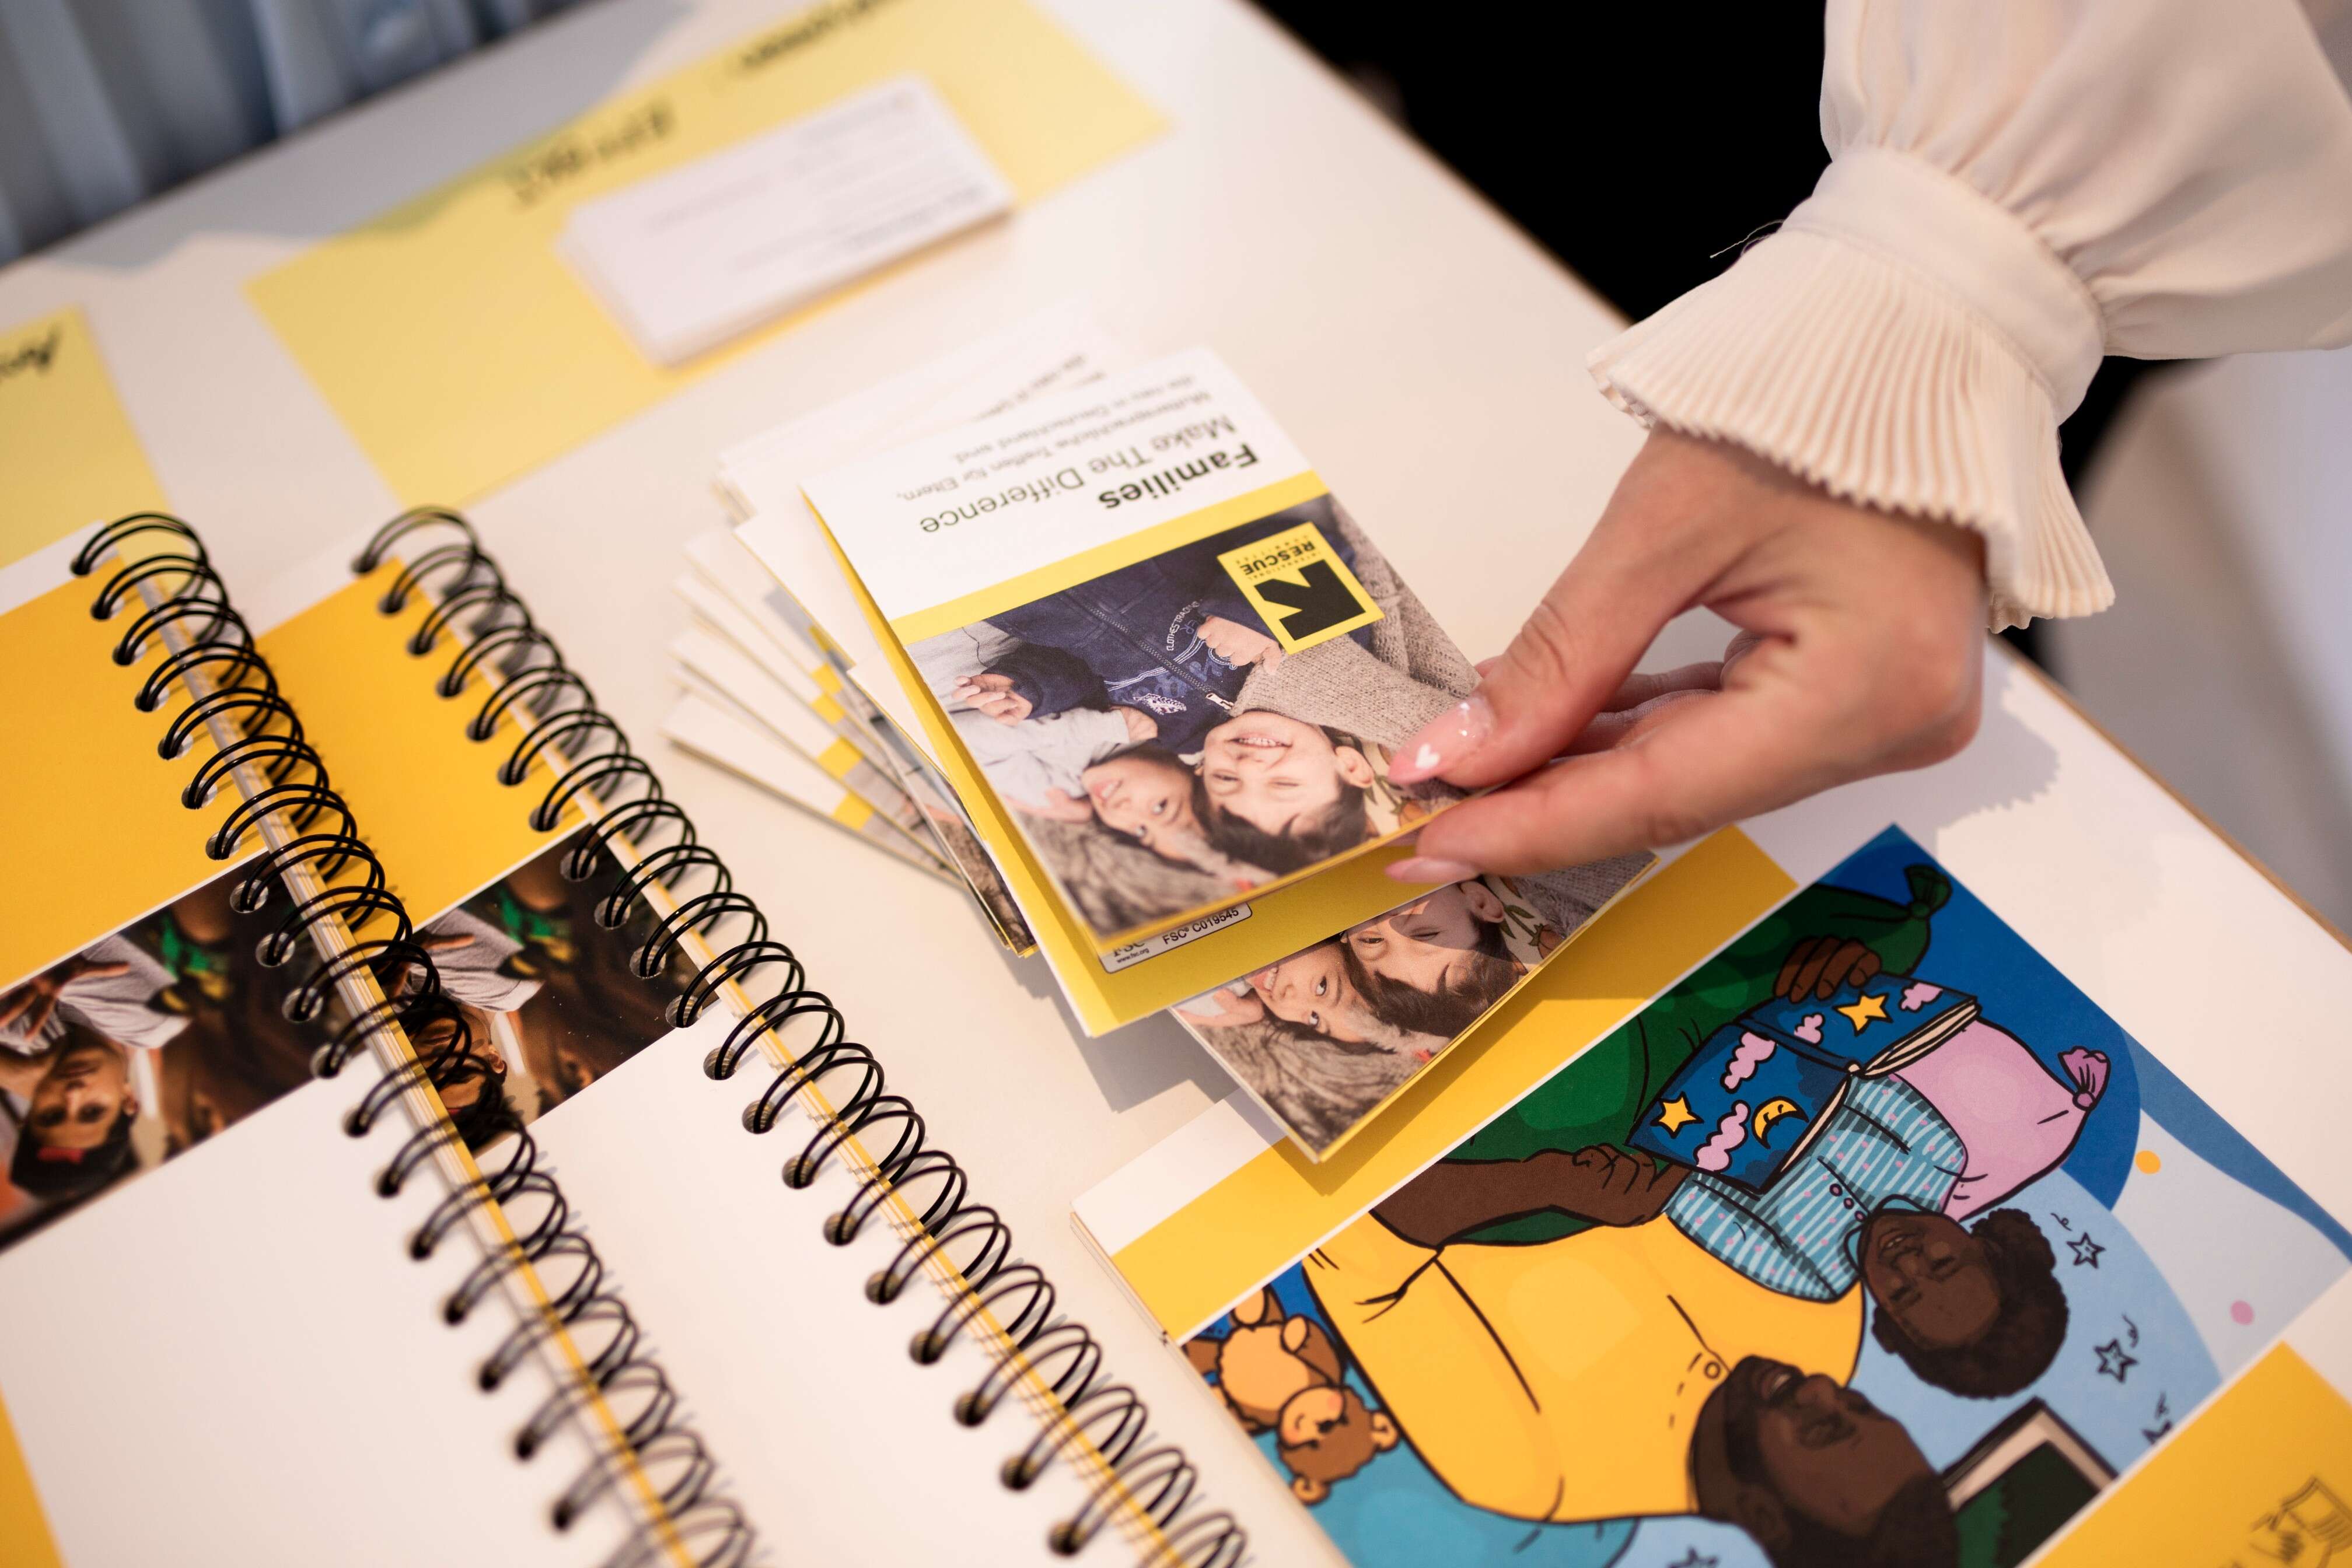 Eine Hand hält ein Faltblatt mit dem Titel "Families Make the Difference" neben einem Tisch mit spiralgebundenen Notizbüchern und bunten Illustrationen.